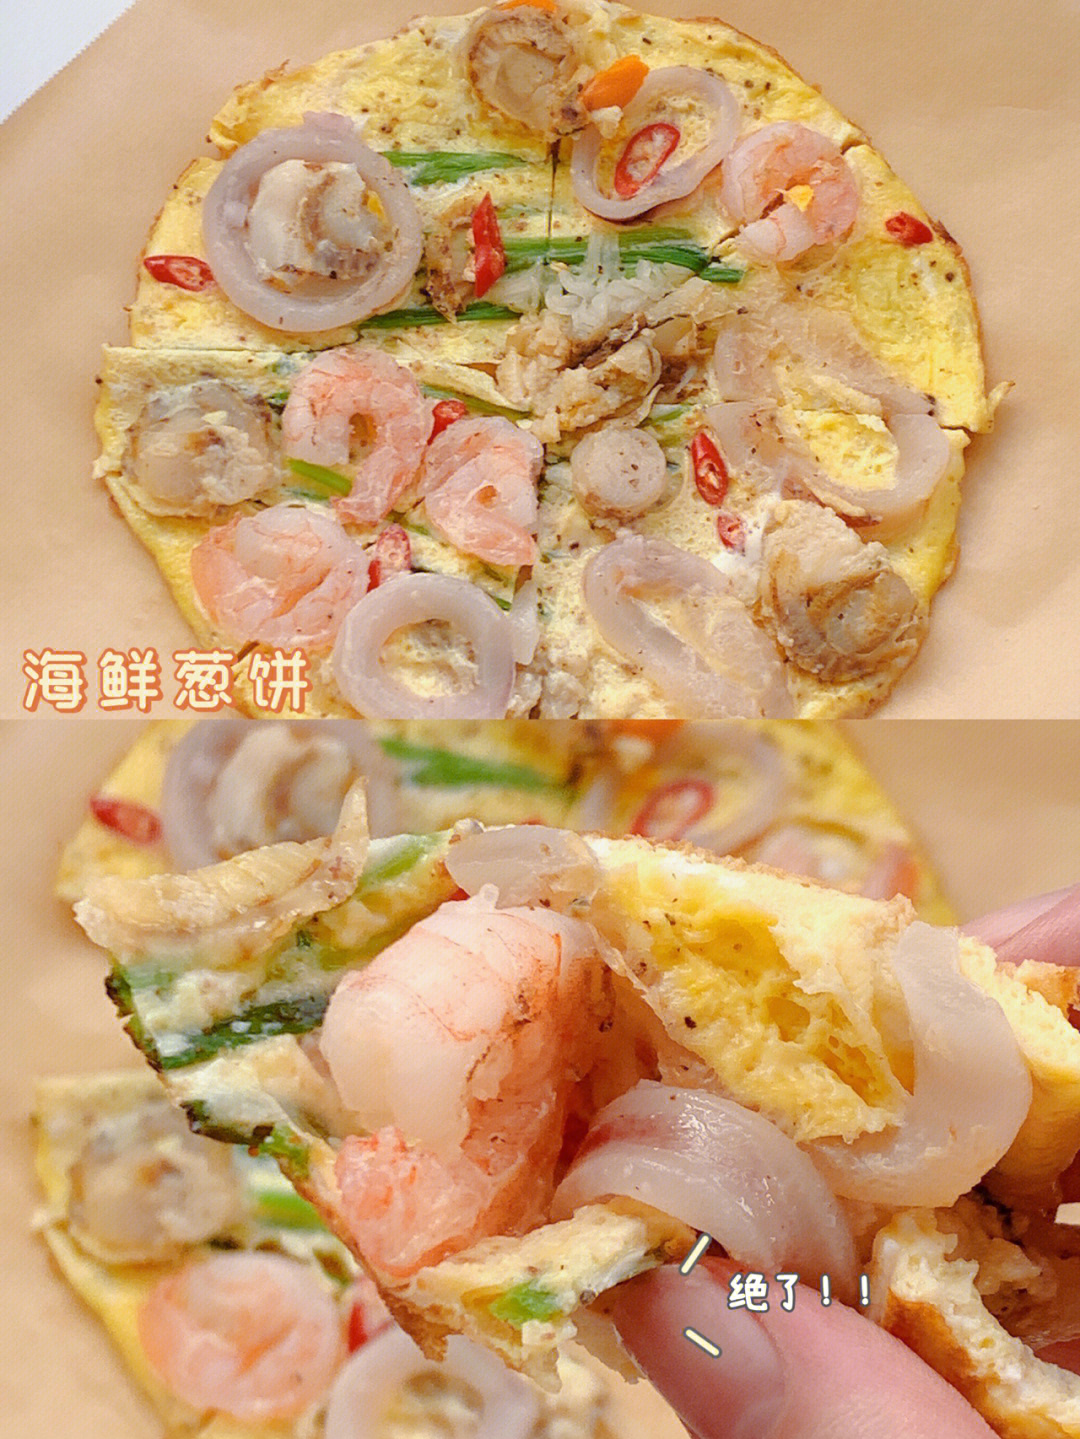 海鲜葱饼蘸料图片